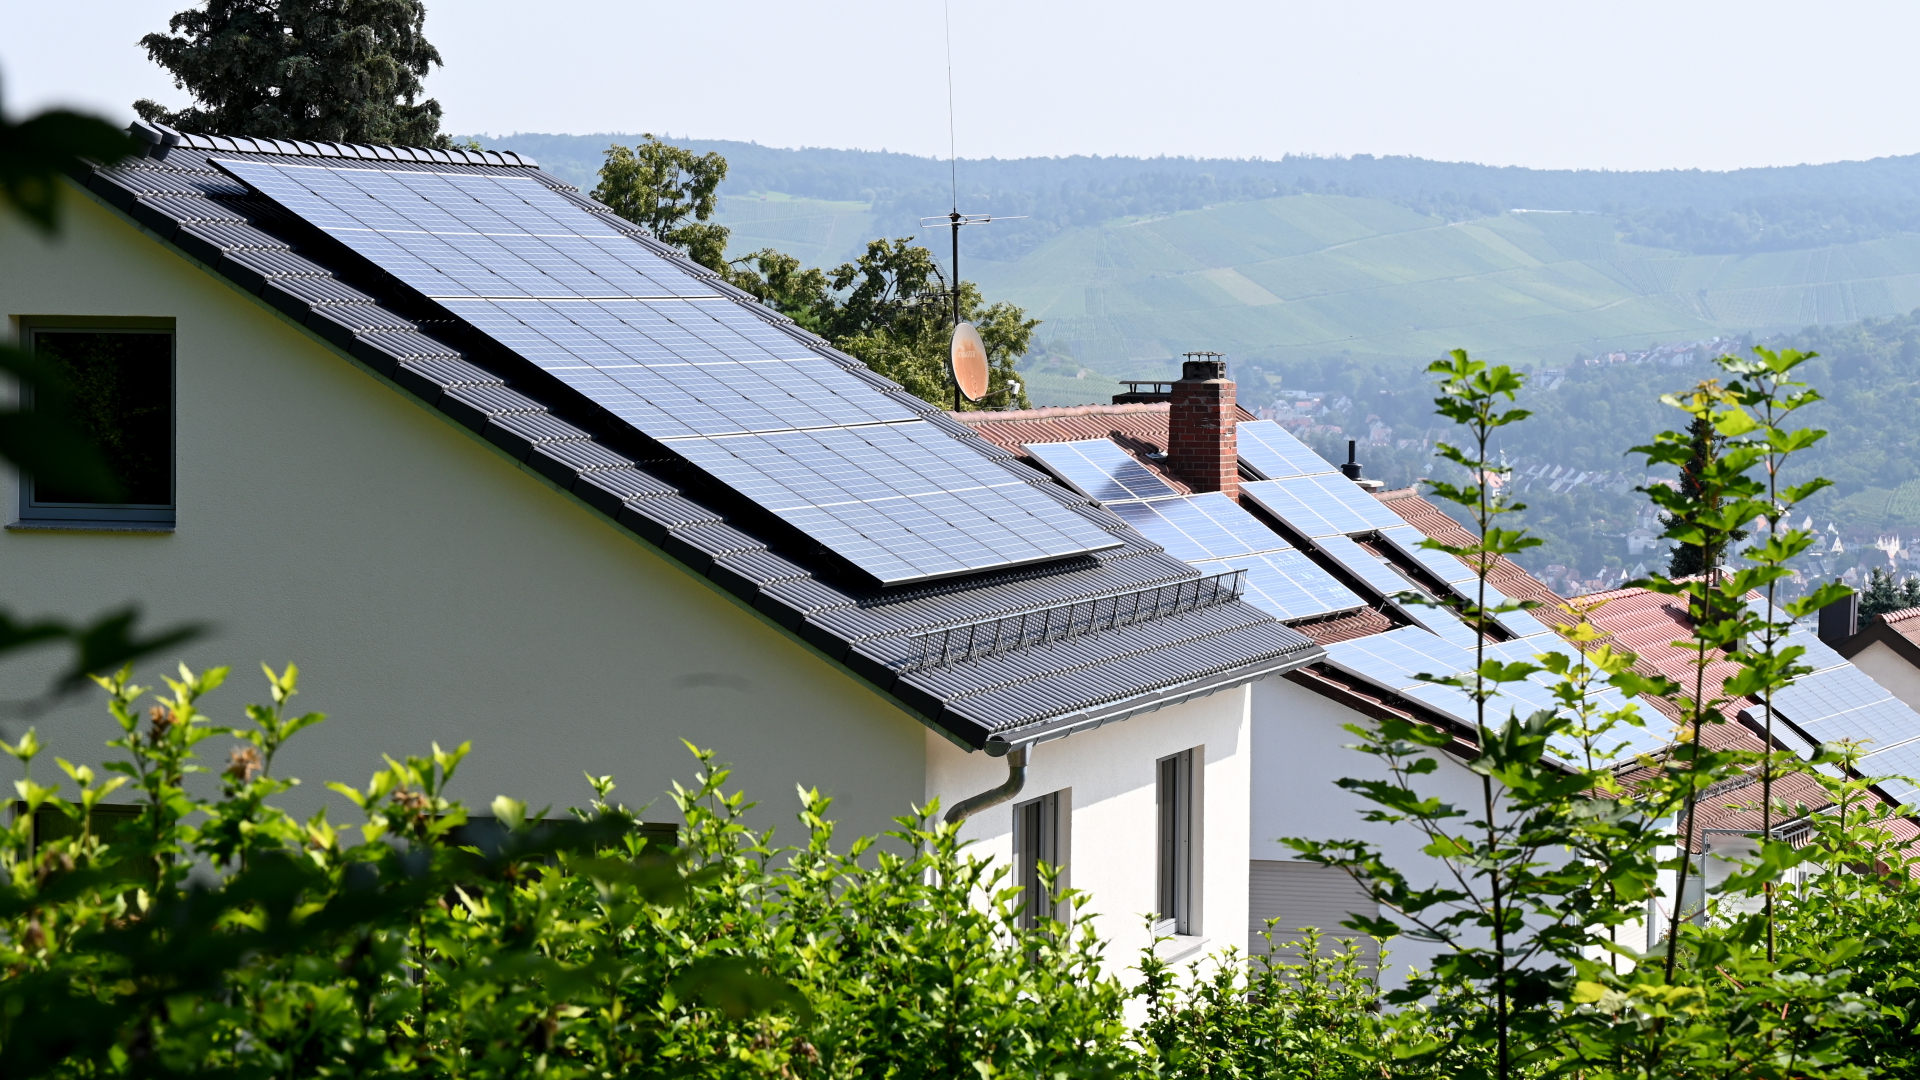 Dächer mit Solaranlagen auf Häusern an einem Hang | dpa